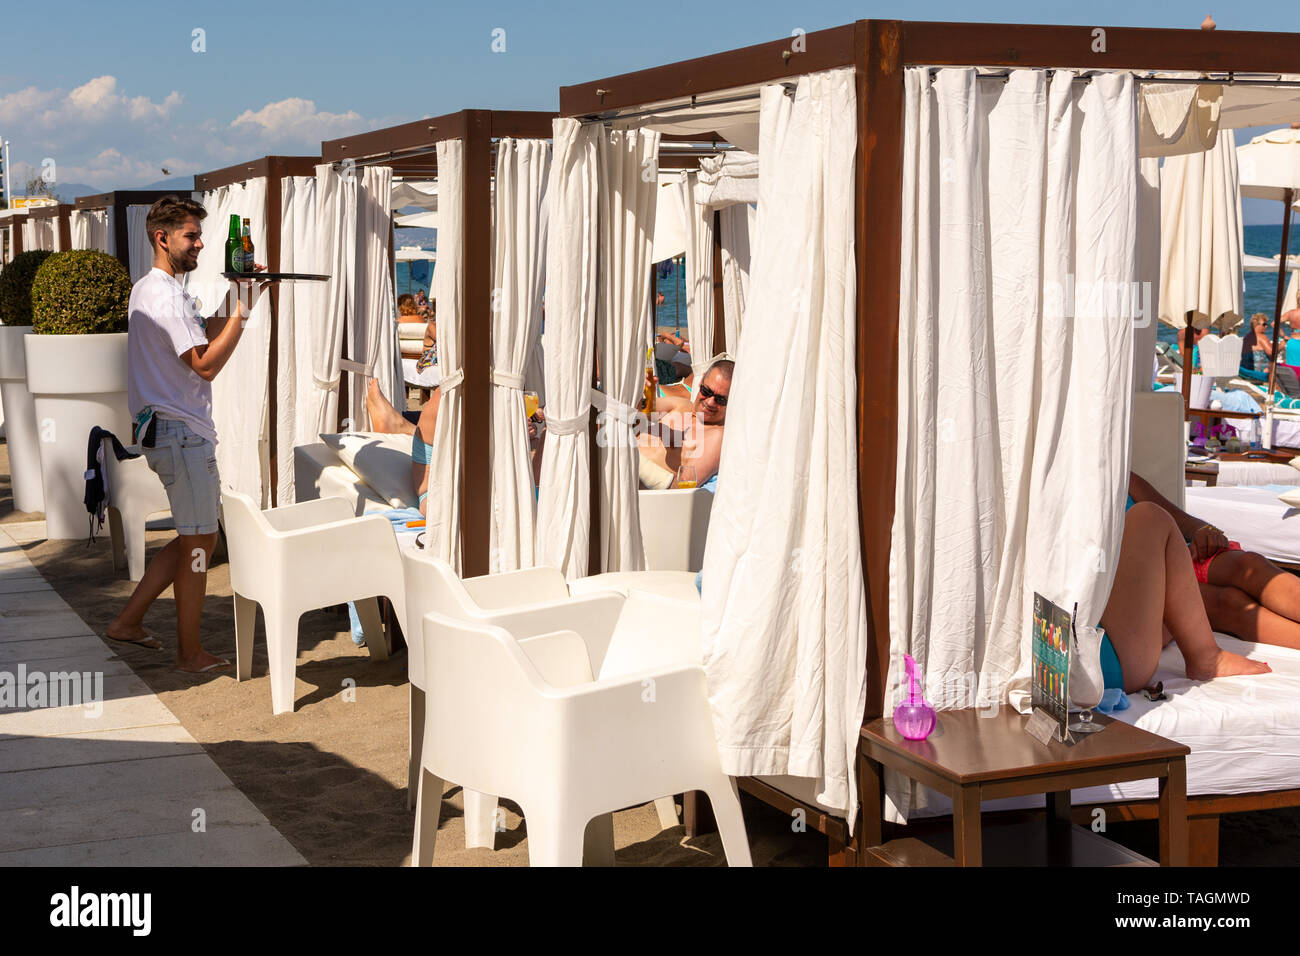 Cameriere in bianco che serve i clienti su bianco ad alta bed end-come le sedie a sdraio sulla spiaggia, Playa Miguel, La Carihuela, Torremolinos, Costa del Sol, Spagna Foto Stock